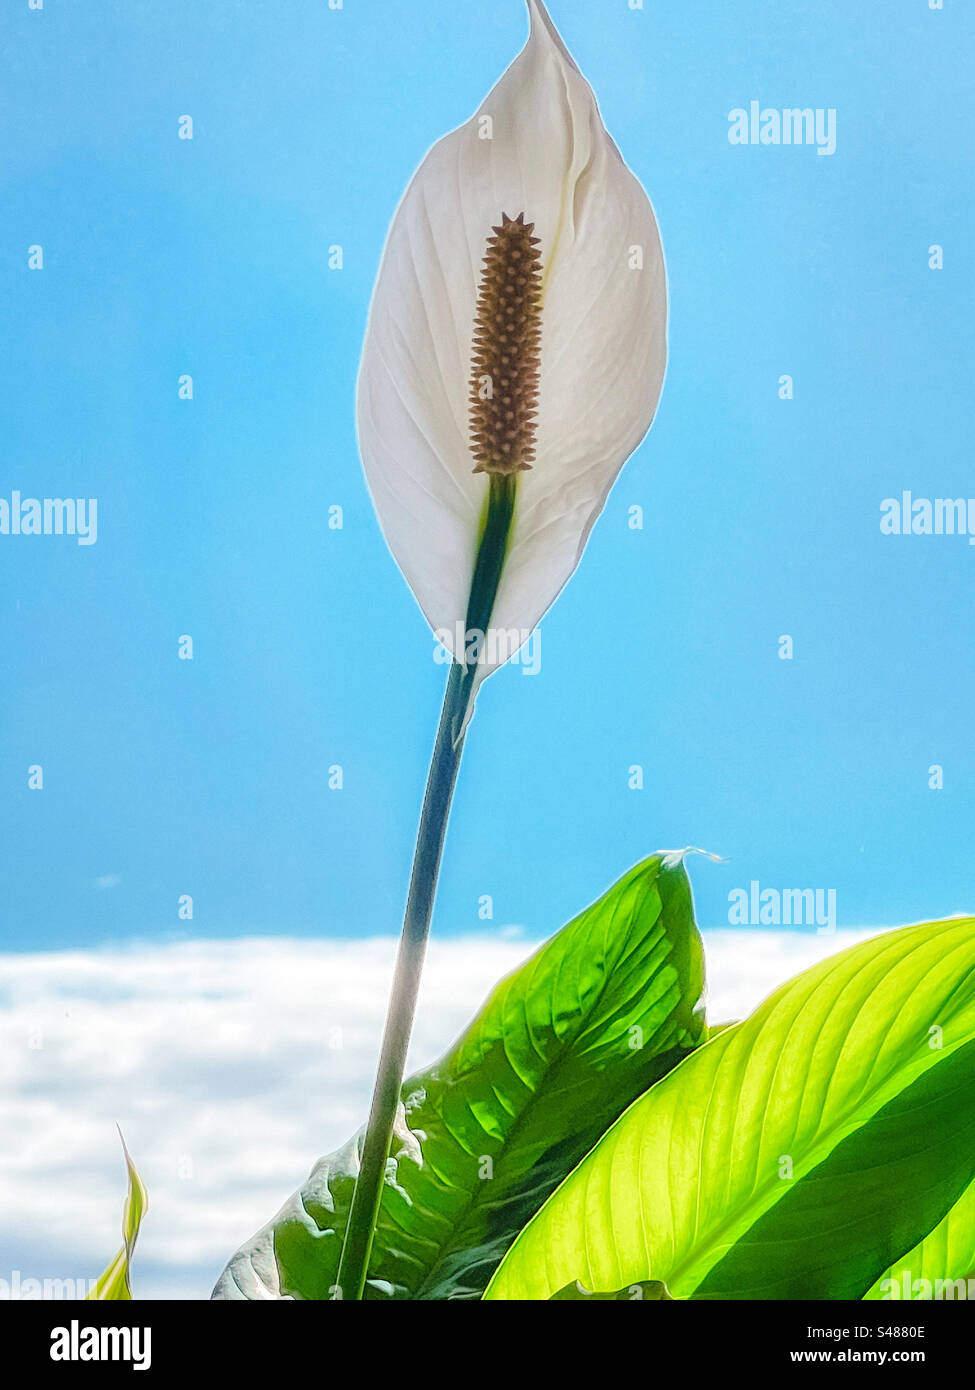 Primo piano del giglio di pace in fiore/pianta in vaso Spathiphyllum al chiuso, contro la finestra con vista del cielo azzurro con la riva di nuvole bianche. Tranquillità. Foto Stock